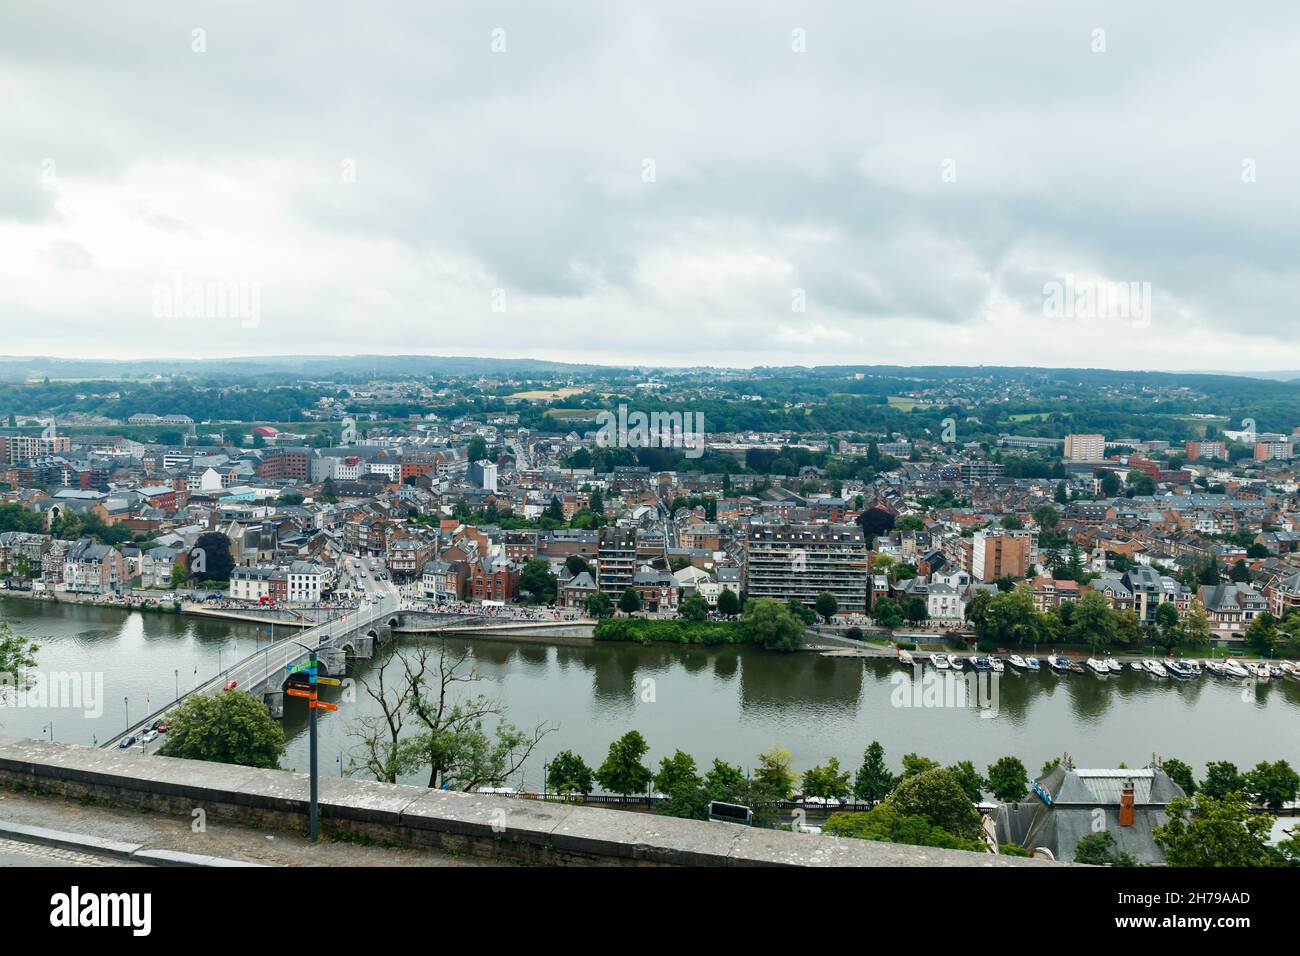 Namur, Belgique - 11 juillet 2021 : vue panoramique de la ville de Namur, Wallonie, Belgique en été Banque D'Images